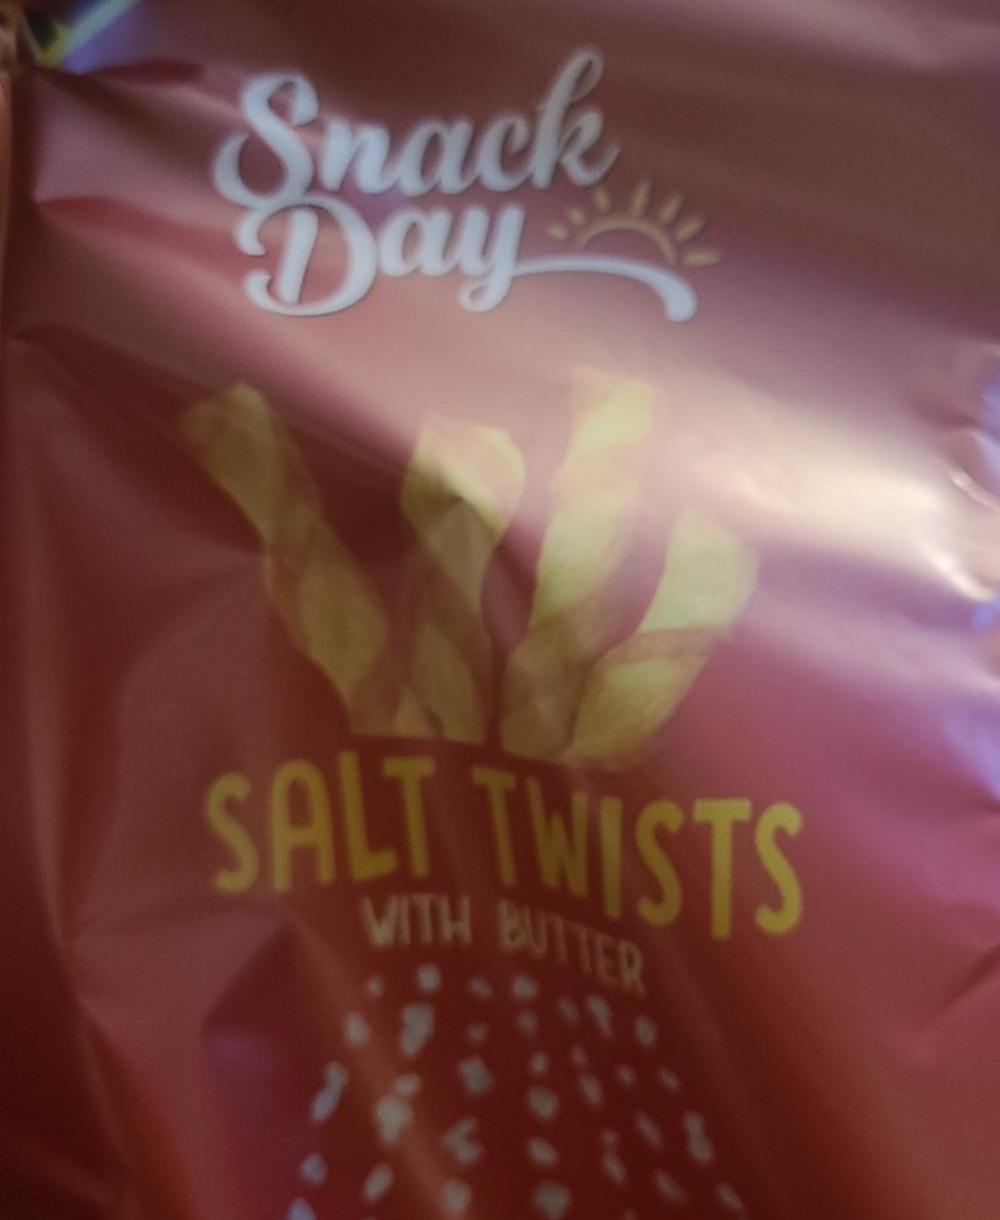 Zdjęcia - Salt Twists Snack Day